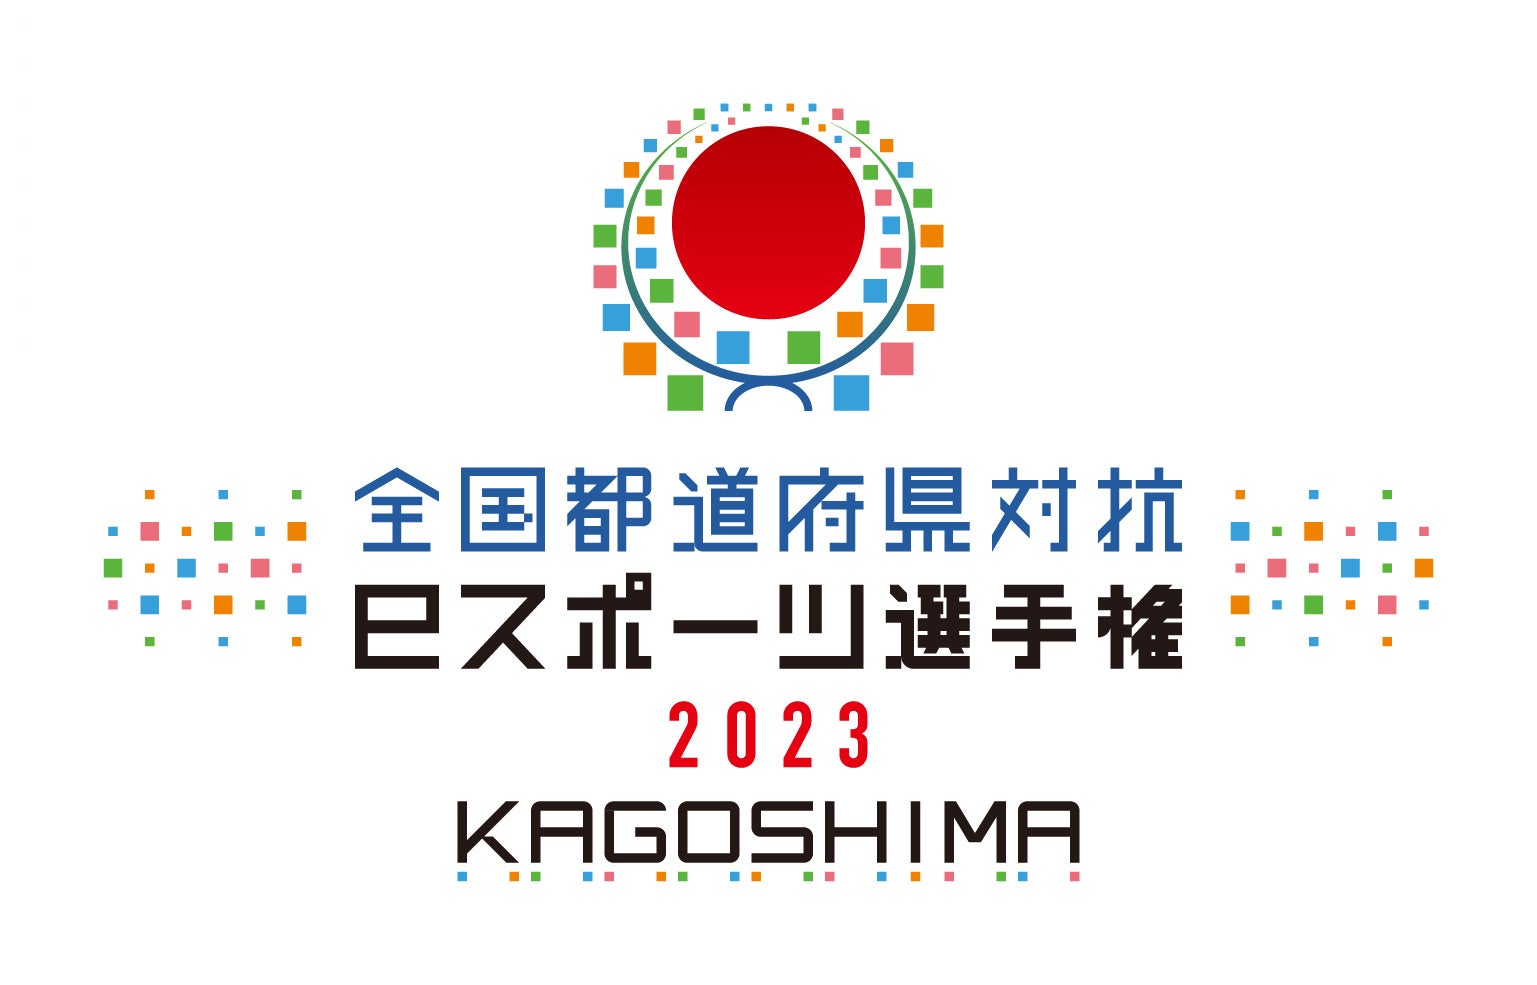 「全国都道府県対抗eスポーツ選手権 2023 KAGOSHIMA ぷよぷよ部門」本日より出場エントリーを開始！プレイオフ参加者にはオリジナルのノベルティをプレゼント